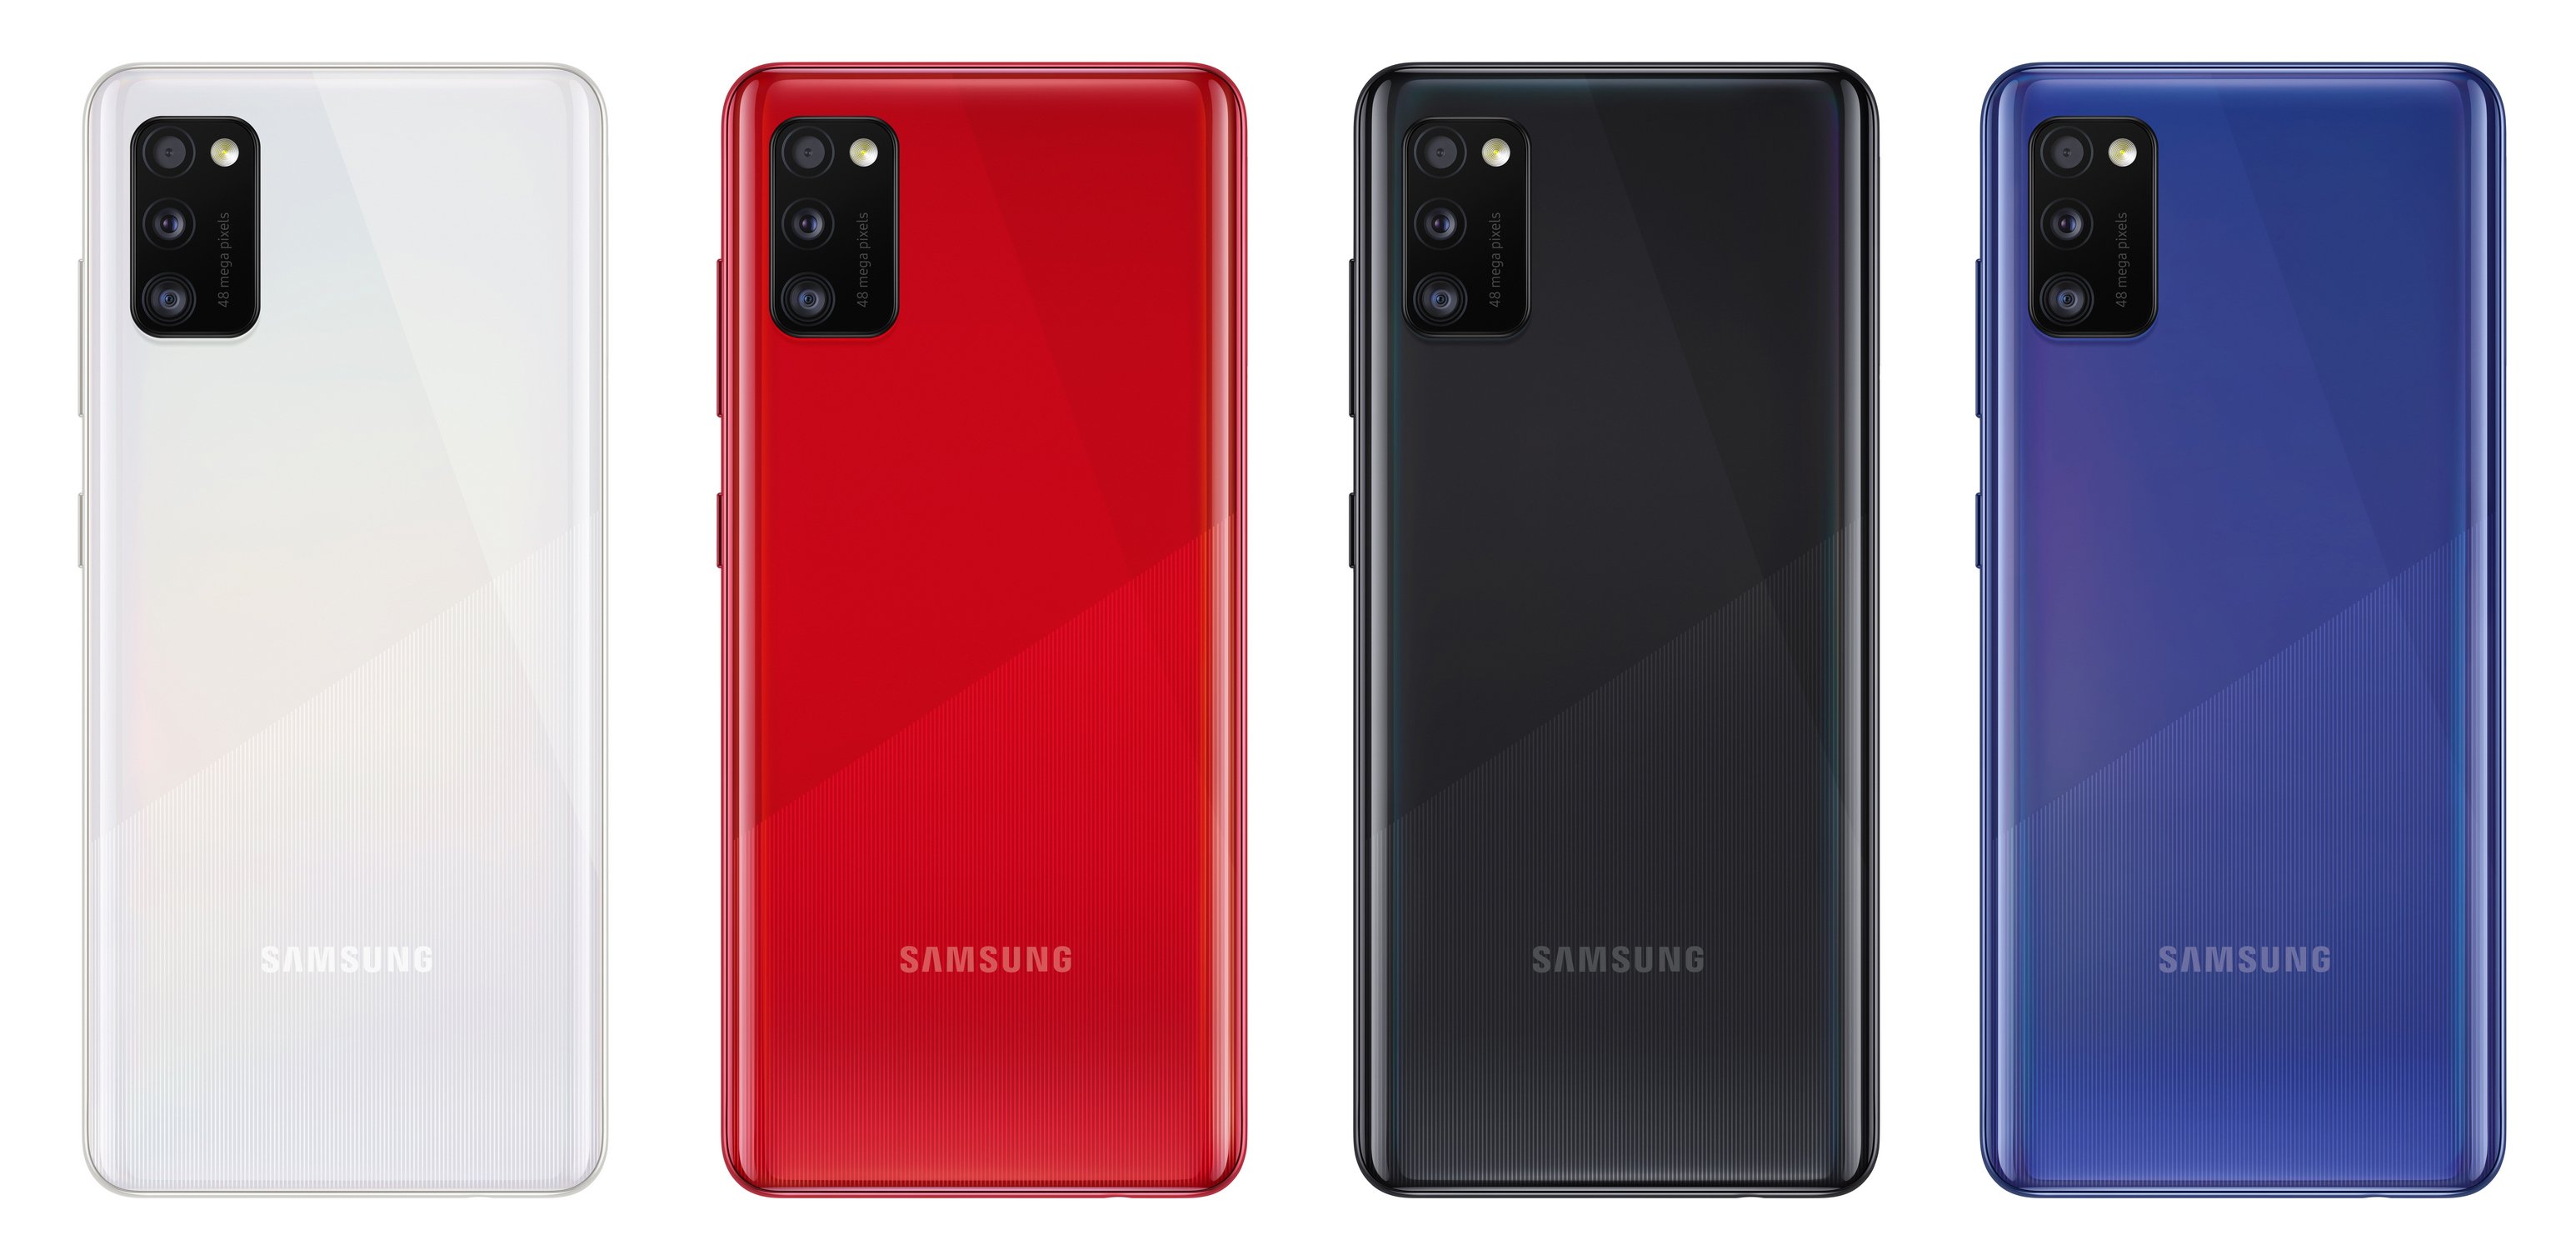 Samsung A217f Galaxy A21s 64gb